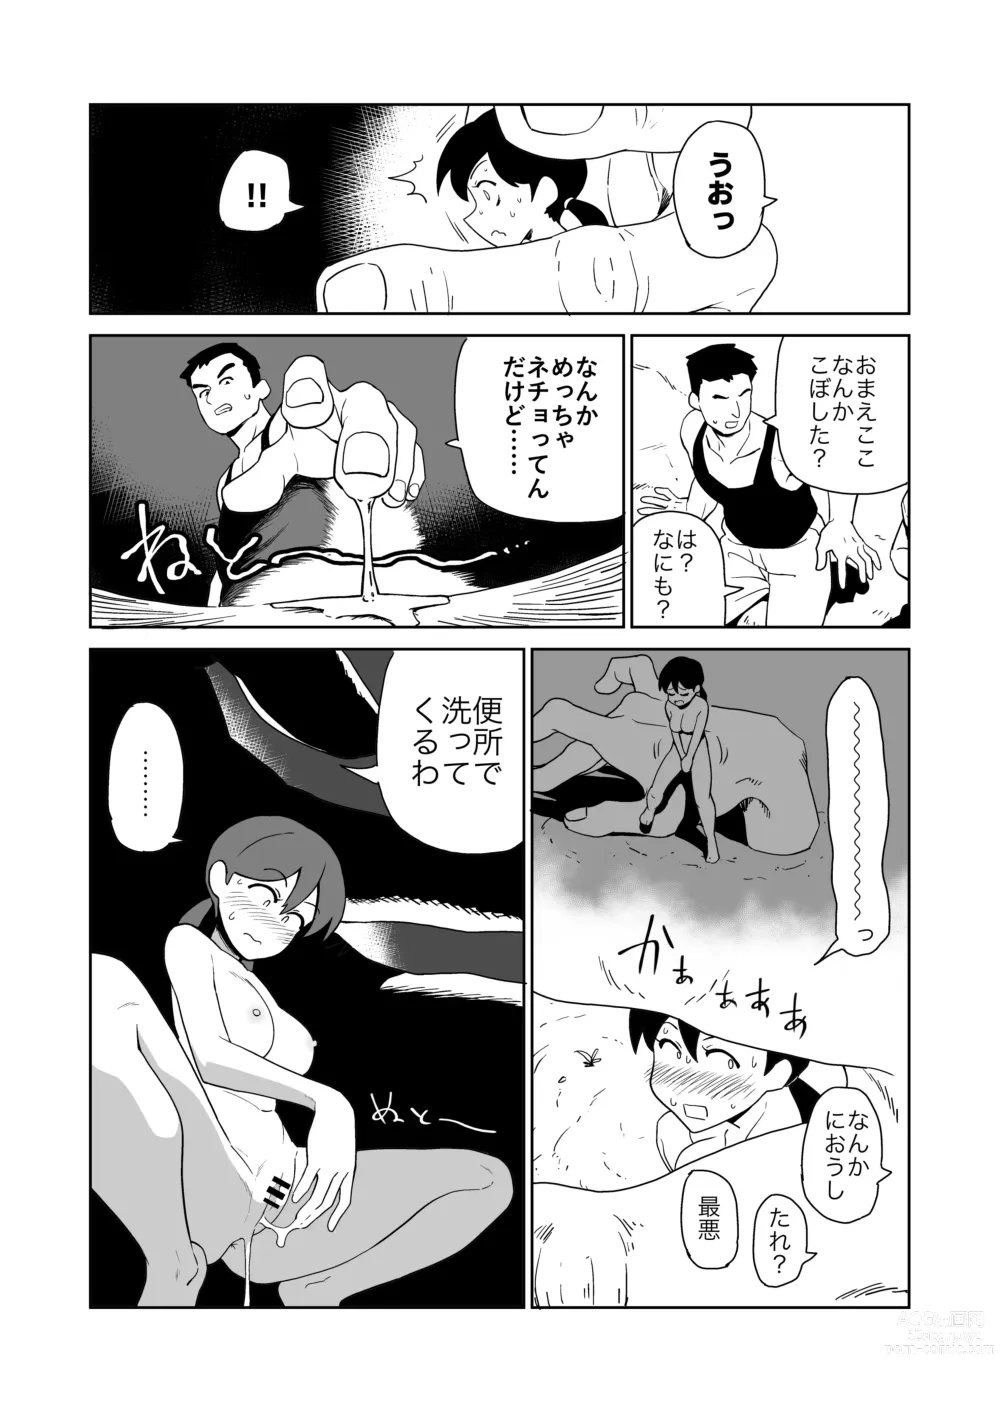 Page 12 of doujinshi Yoru,  Kouen, Roshutsu Jii.